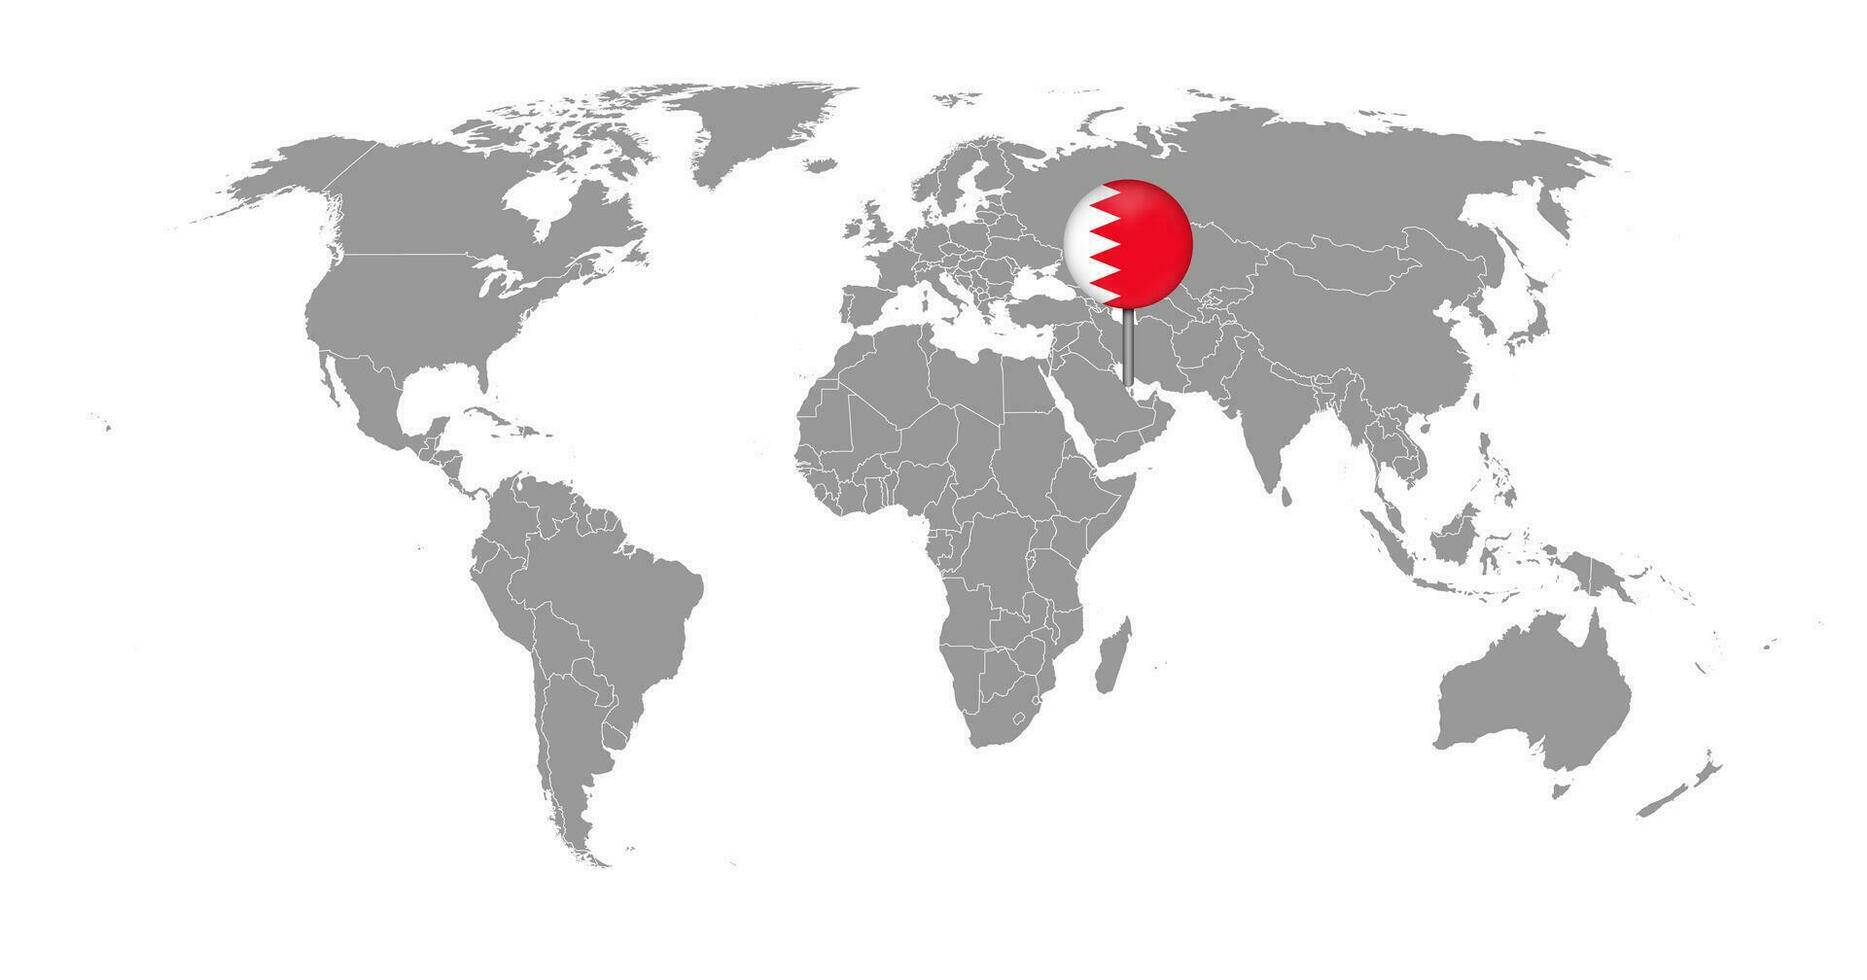 nålkarta med Bahrains flagga på världskartan. vektor illustration.